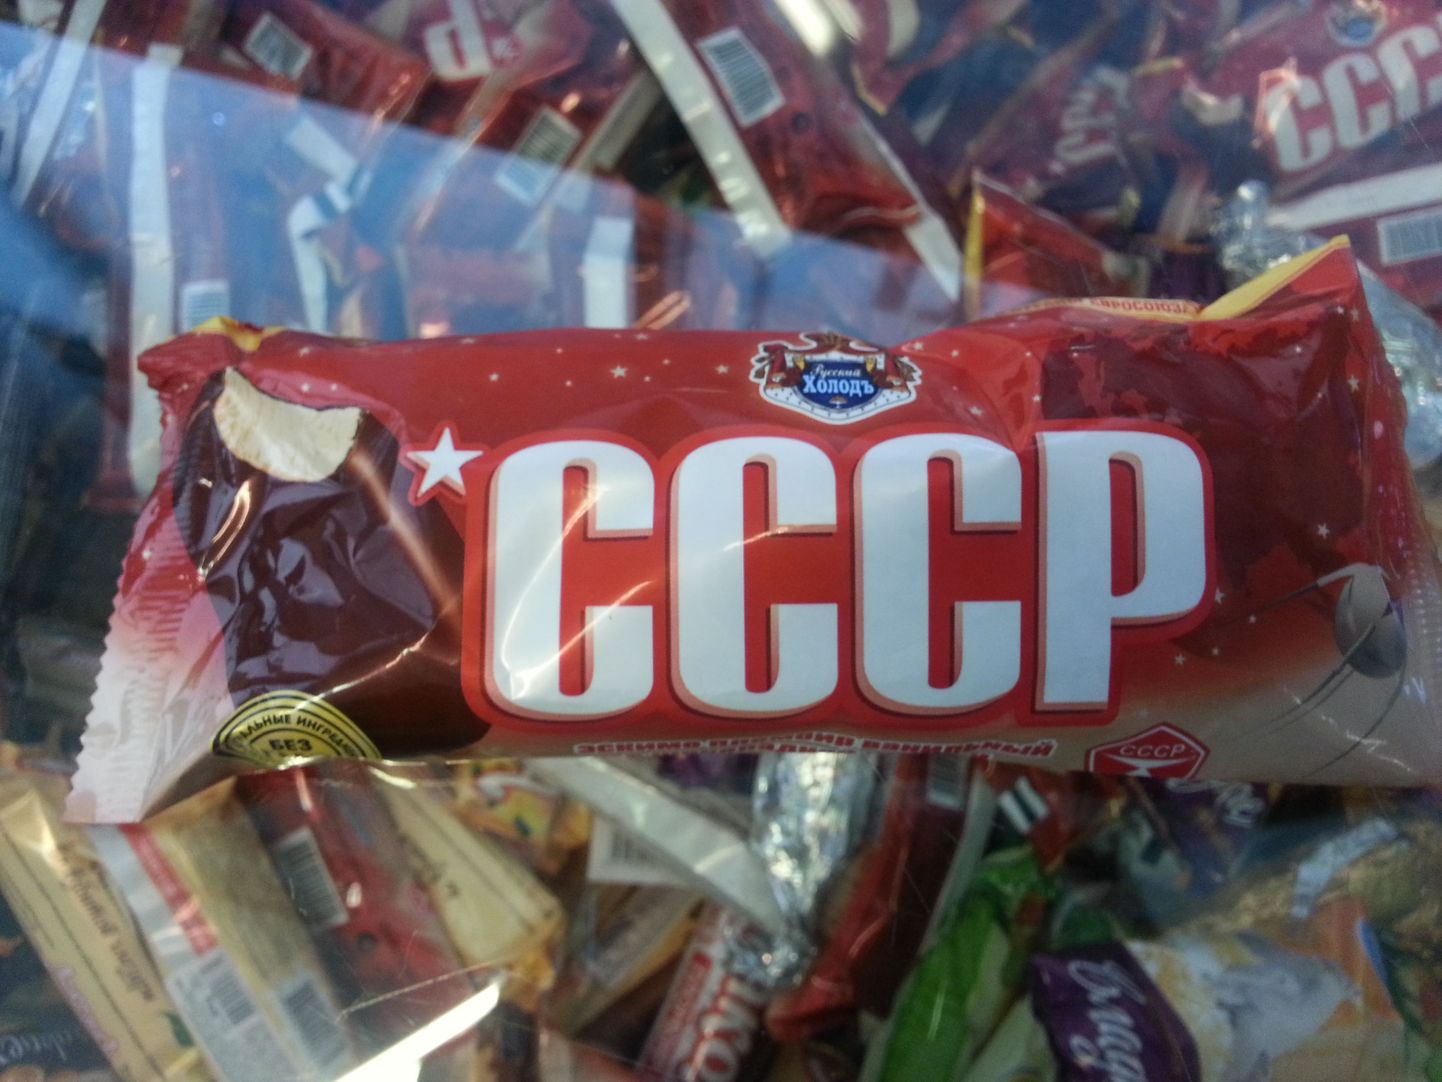 Мороженое с надписью СССР. Снимок иллюстративный.